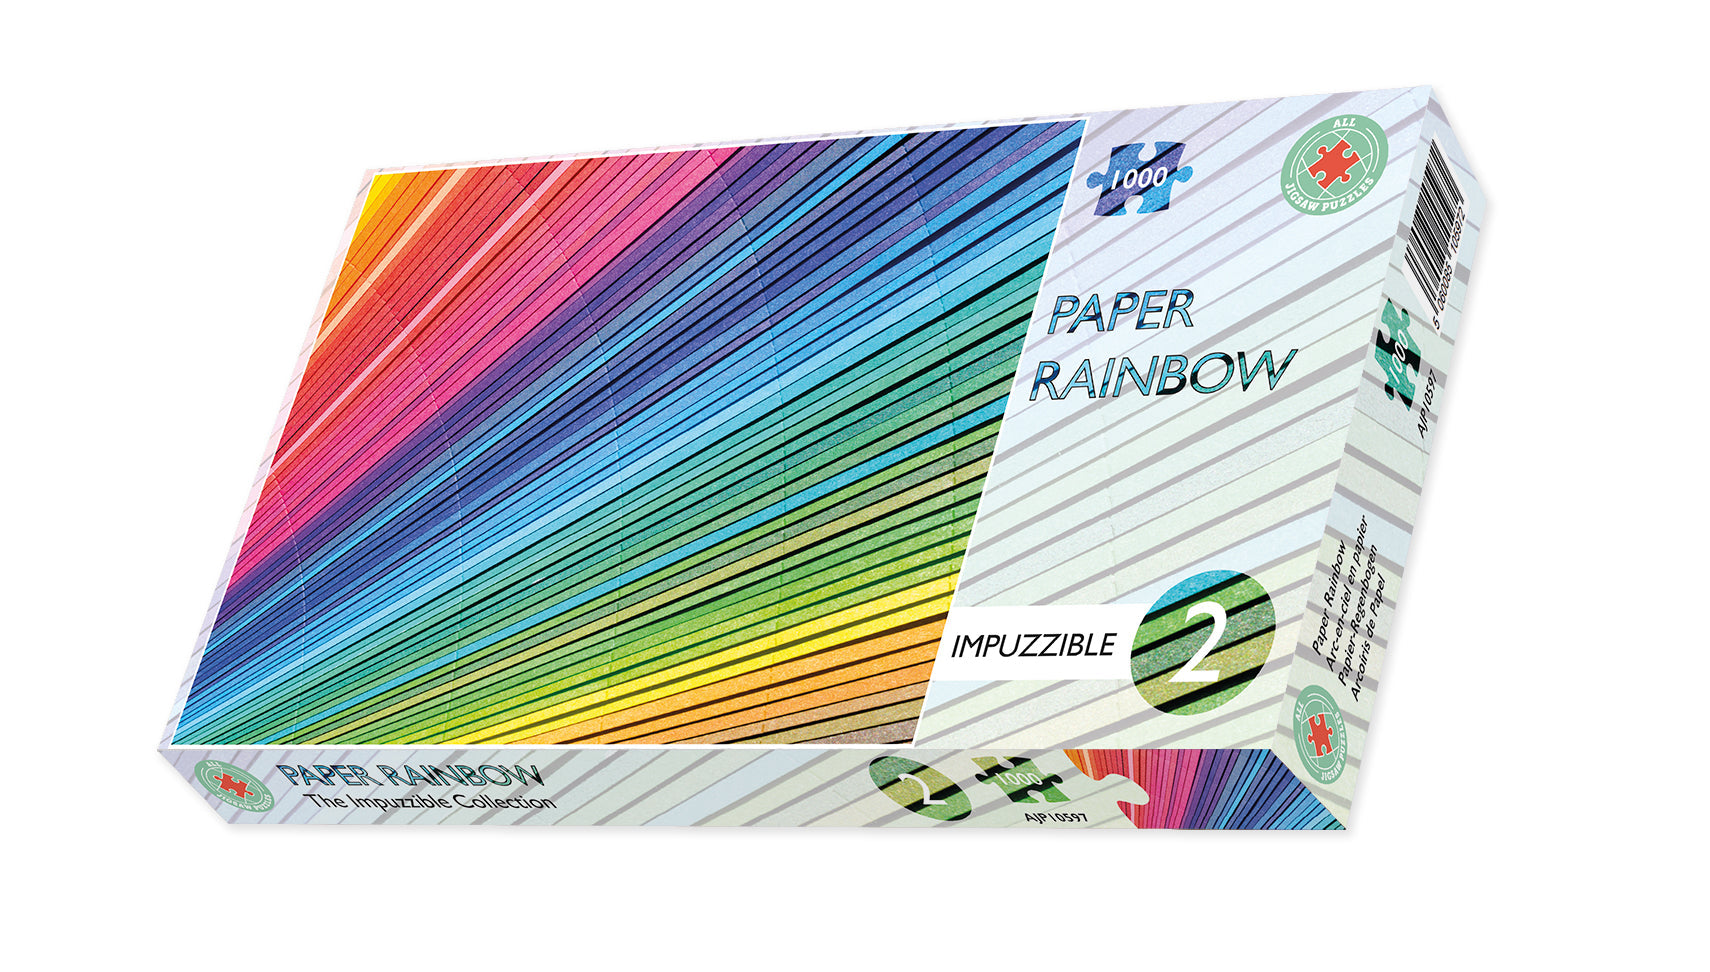 Paper Rainbow - Impuzzible No.2 - Impuzzible 1000 piece box